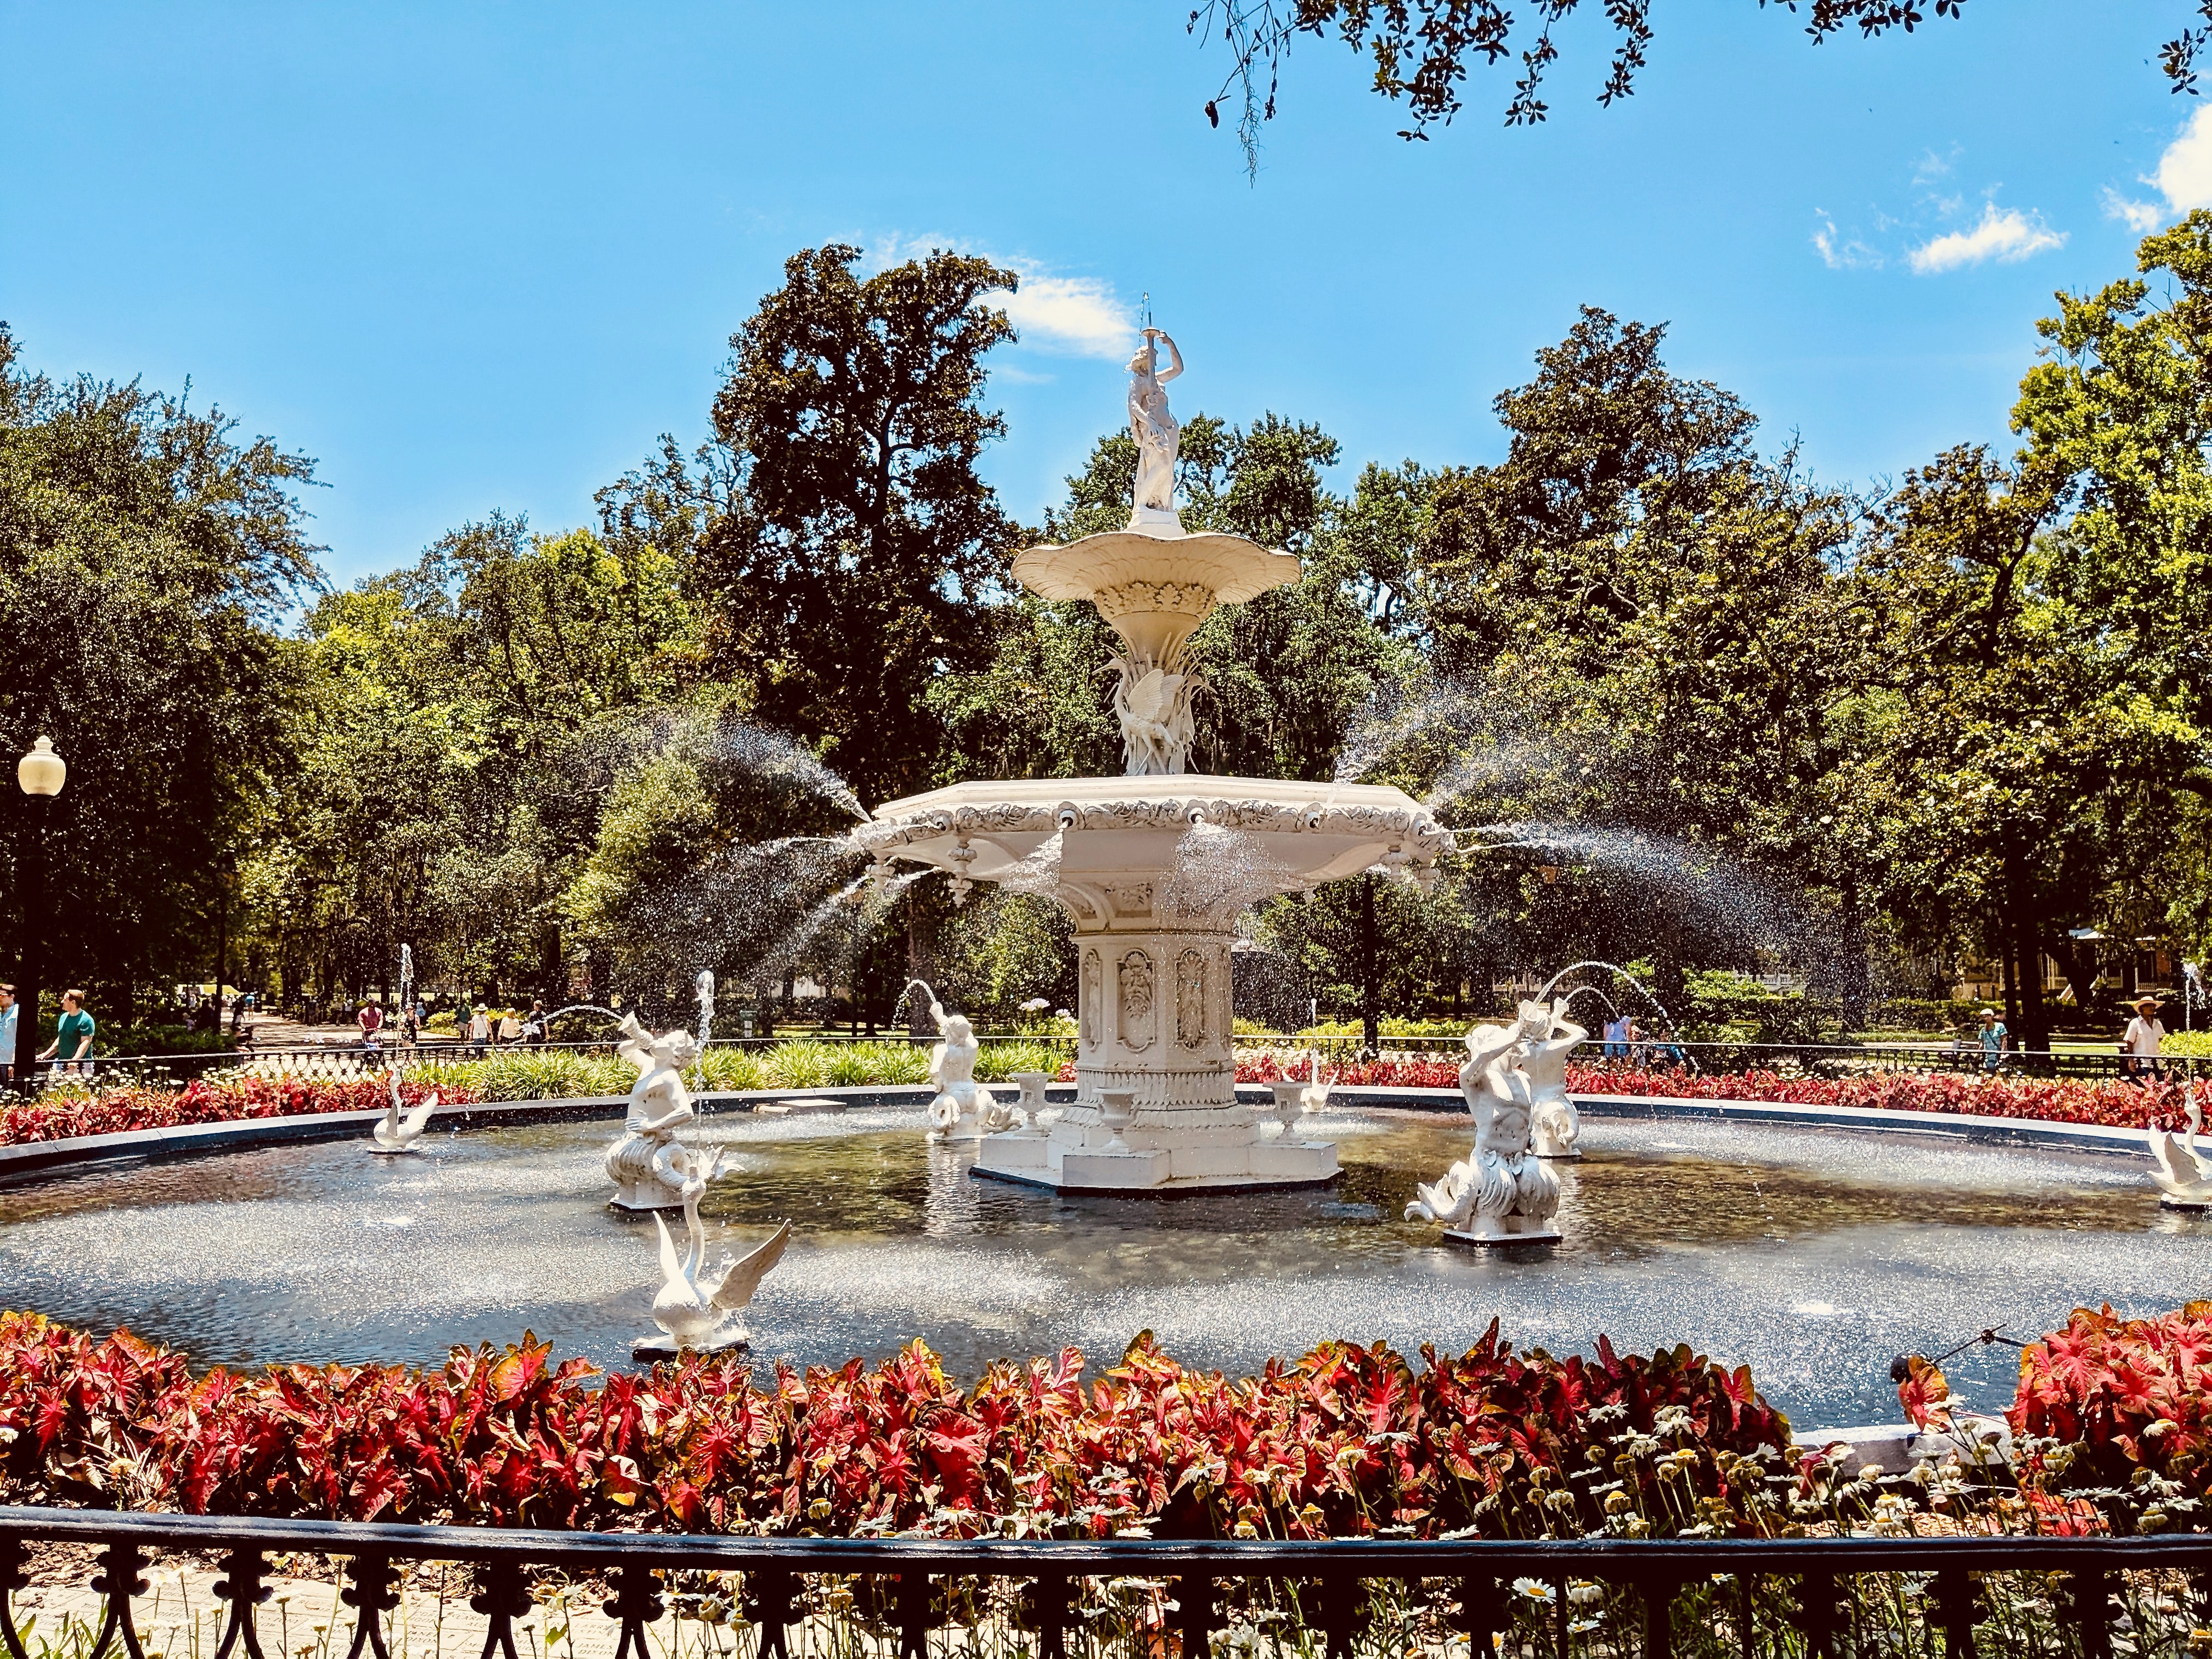 Elegant fountain in a park square